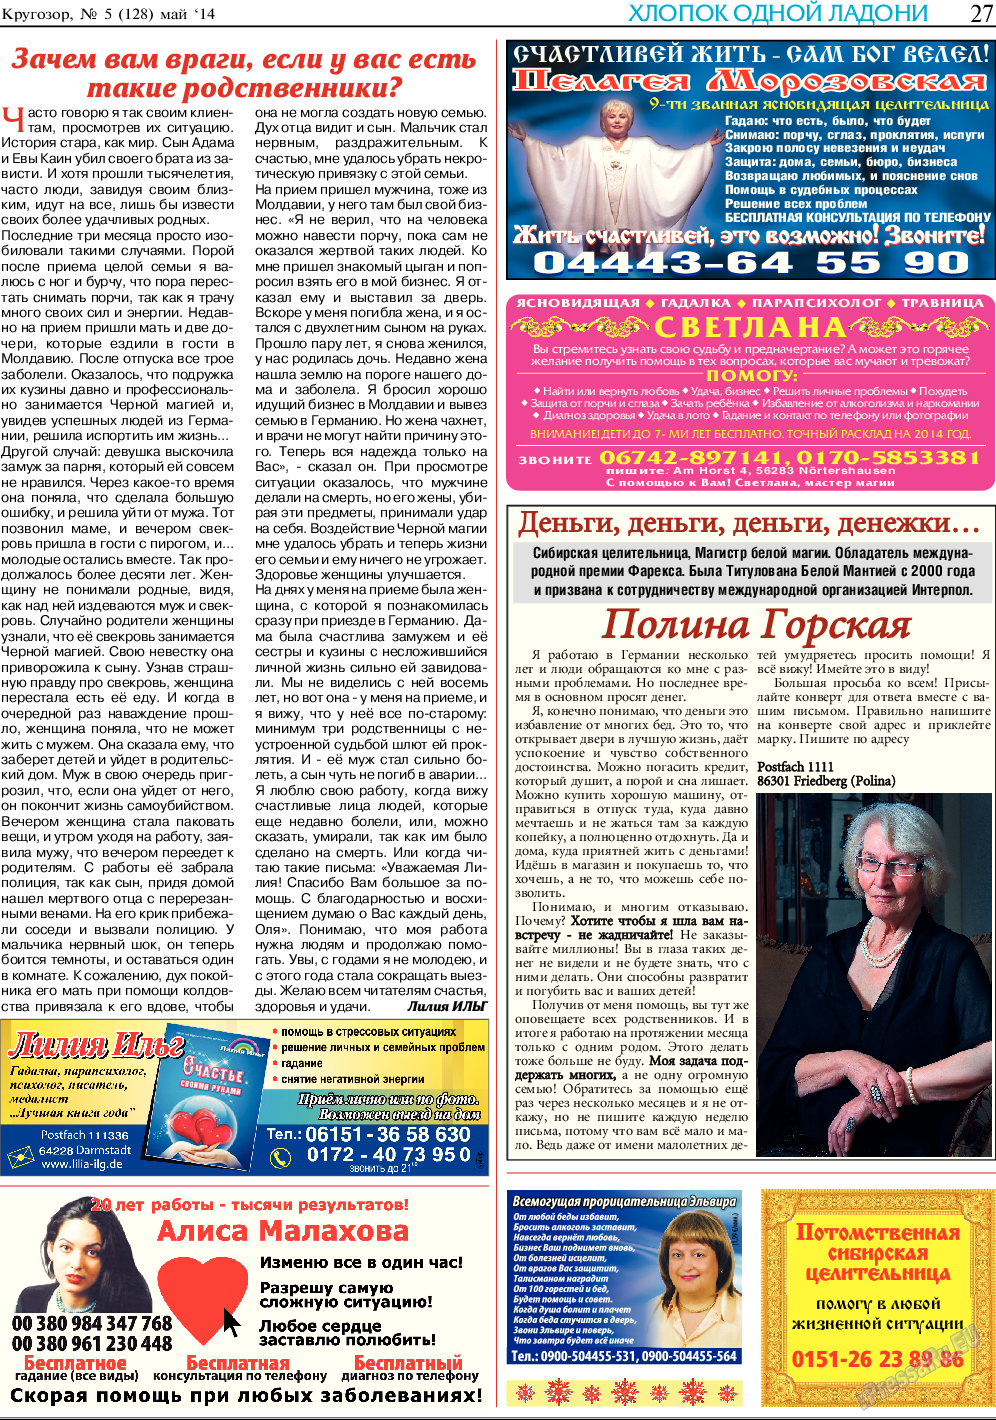 Кругозор, газета. 2014 №5 стр.27